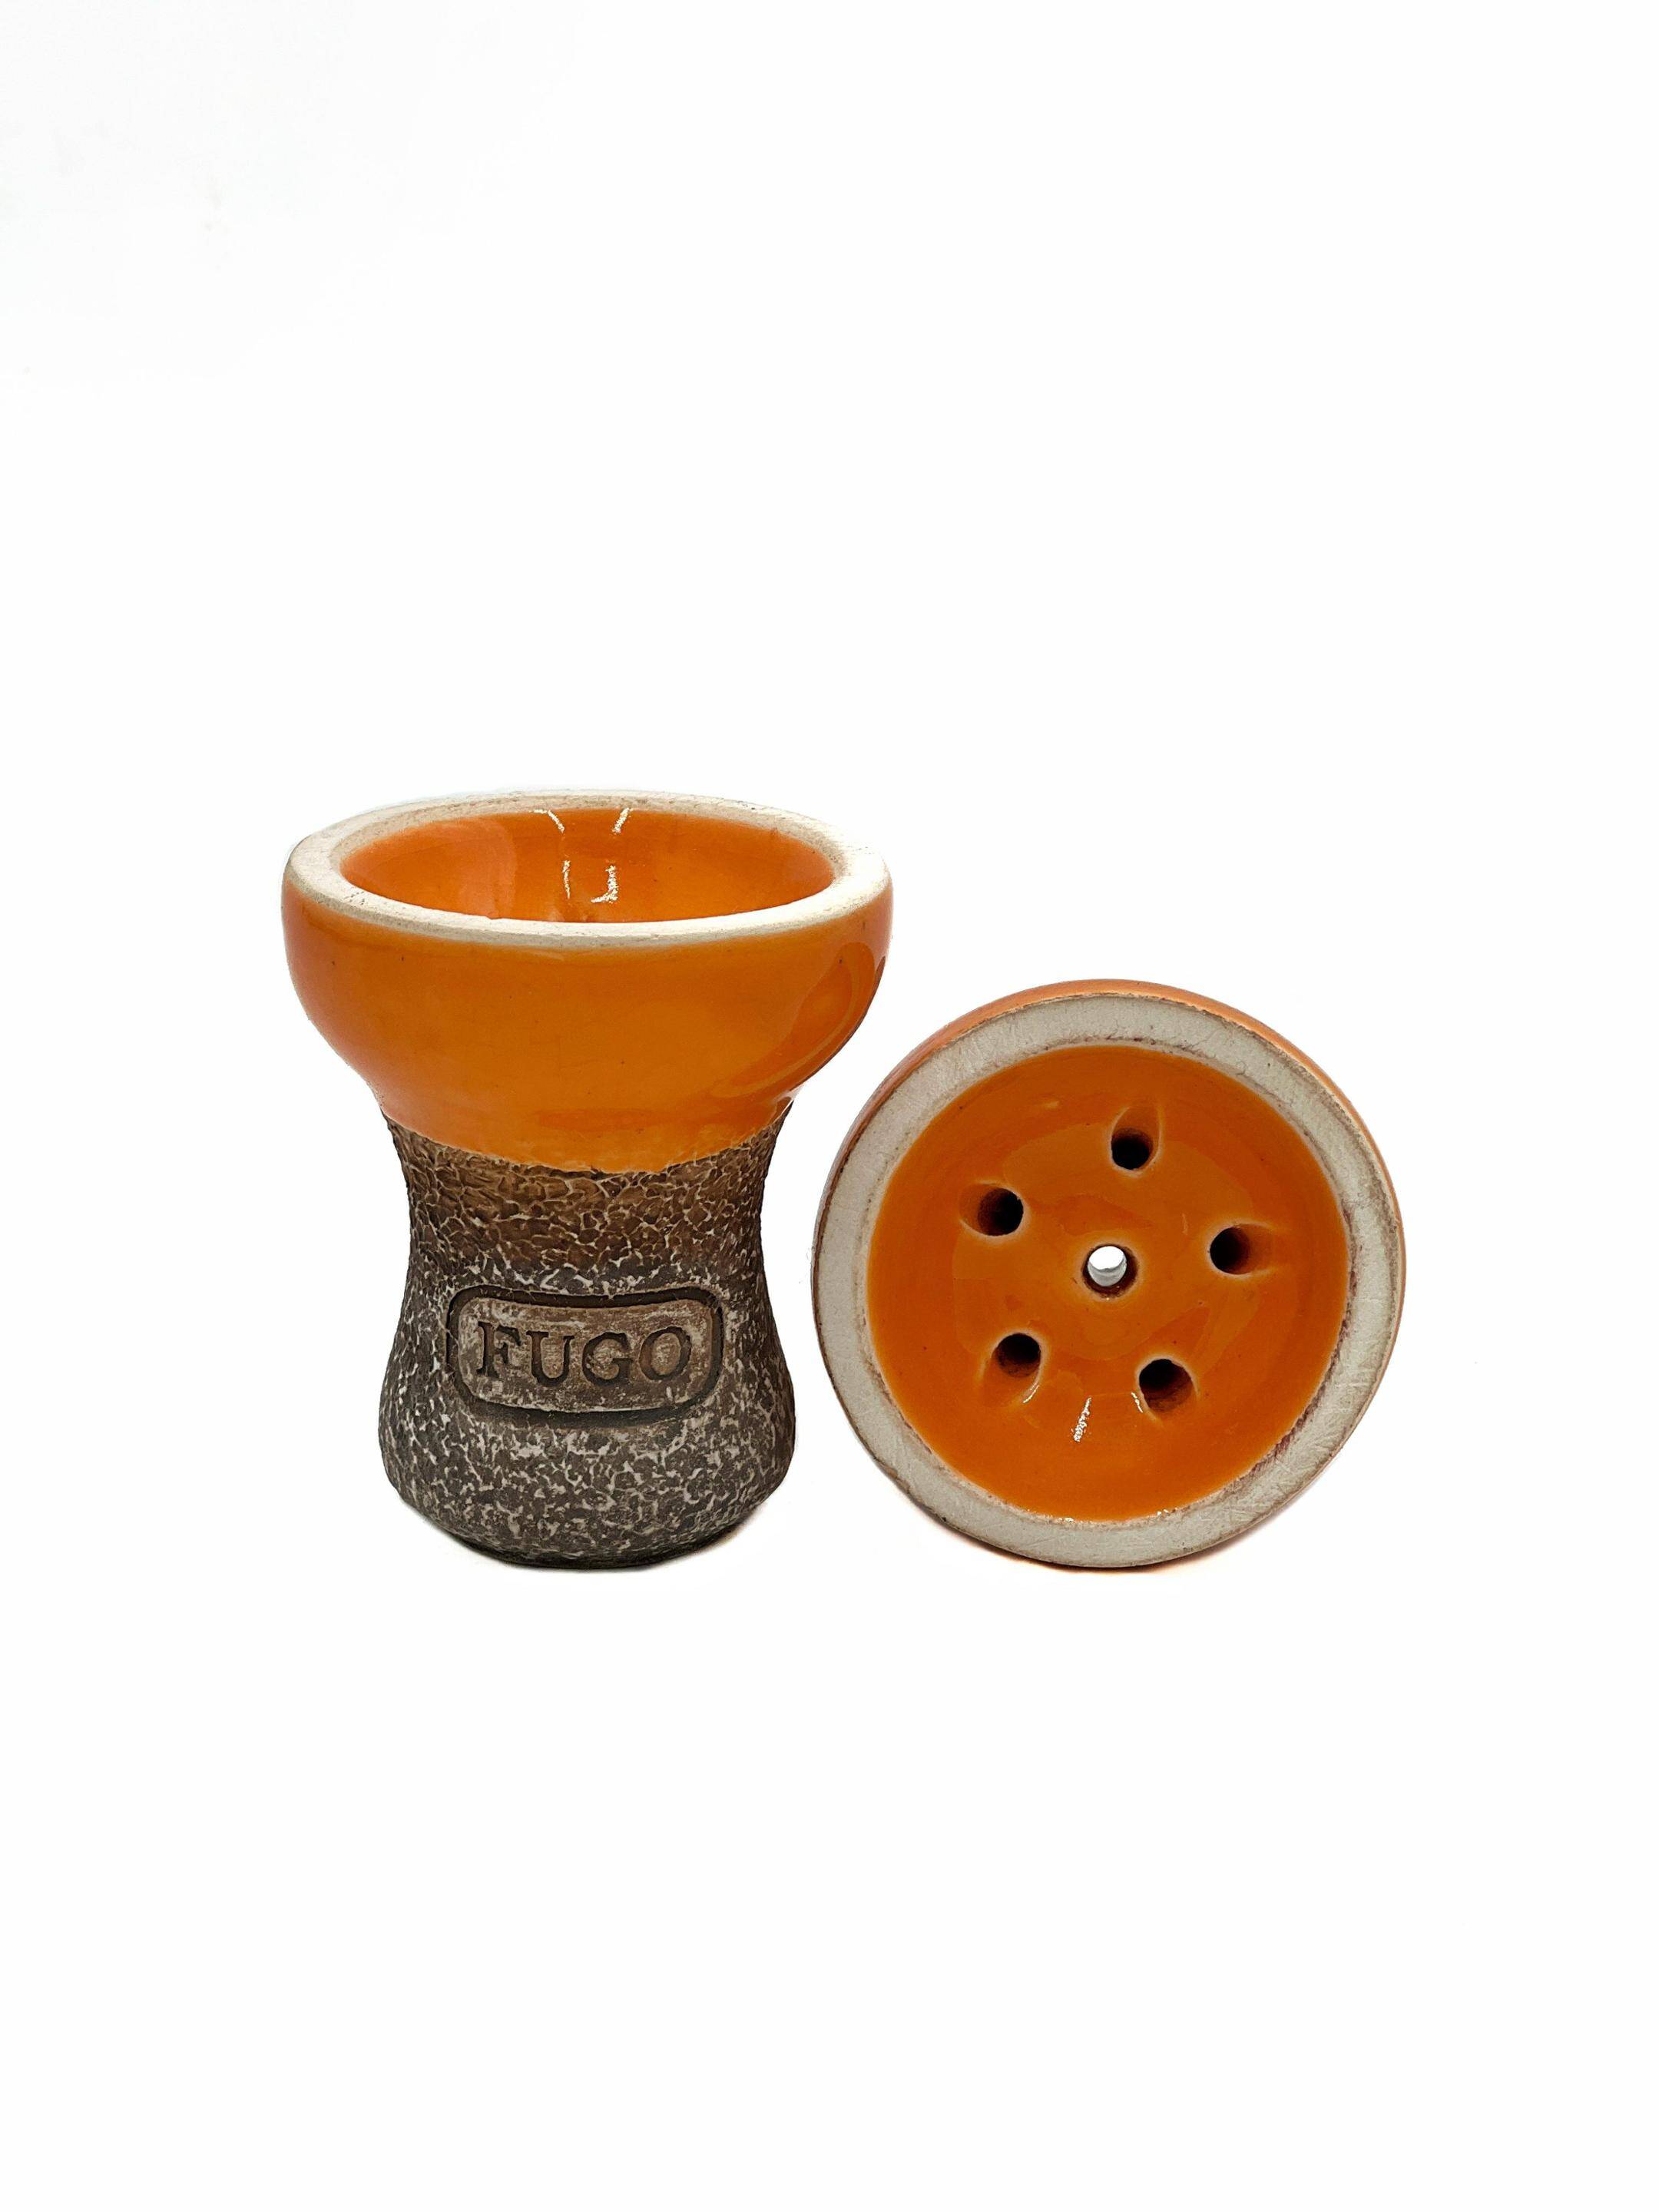 Clay bowl FUGO Turka Glaze ORANGE